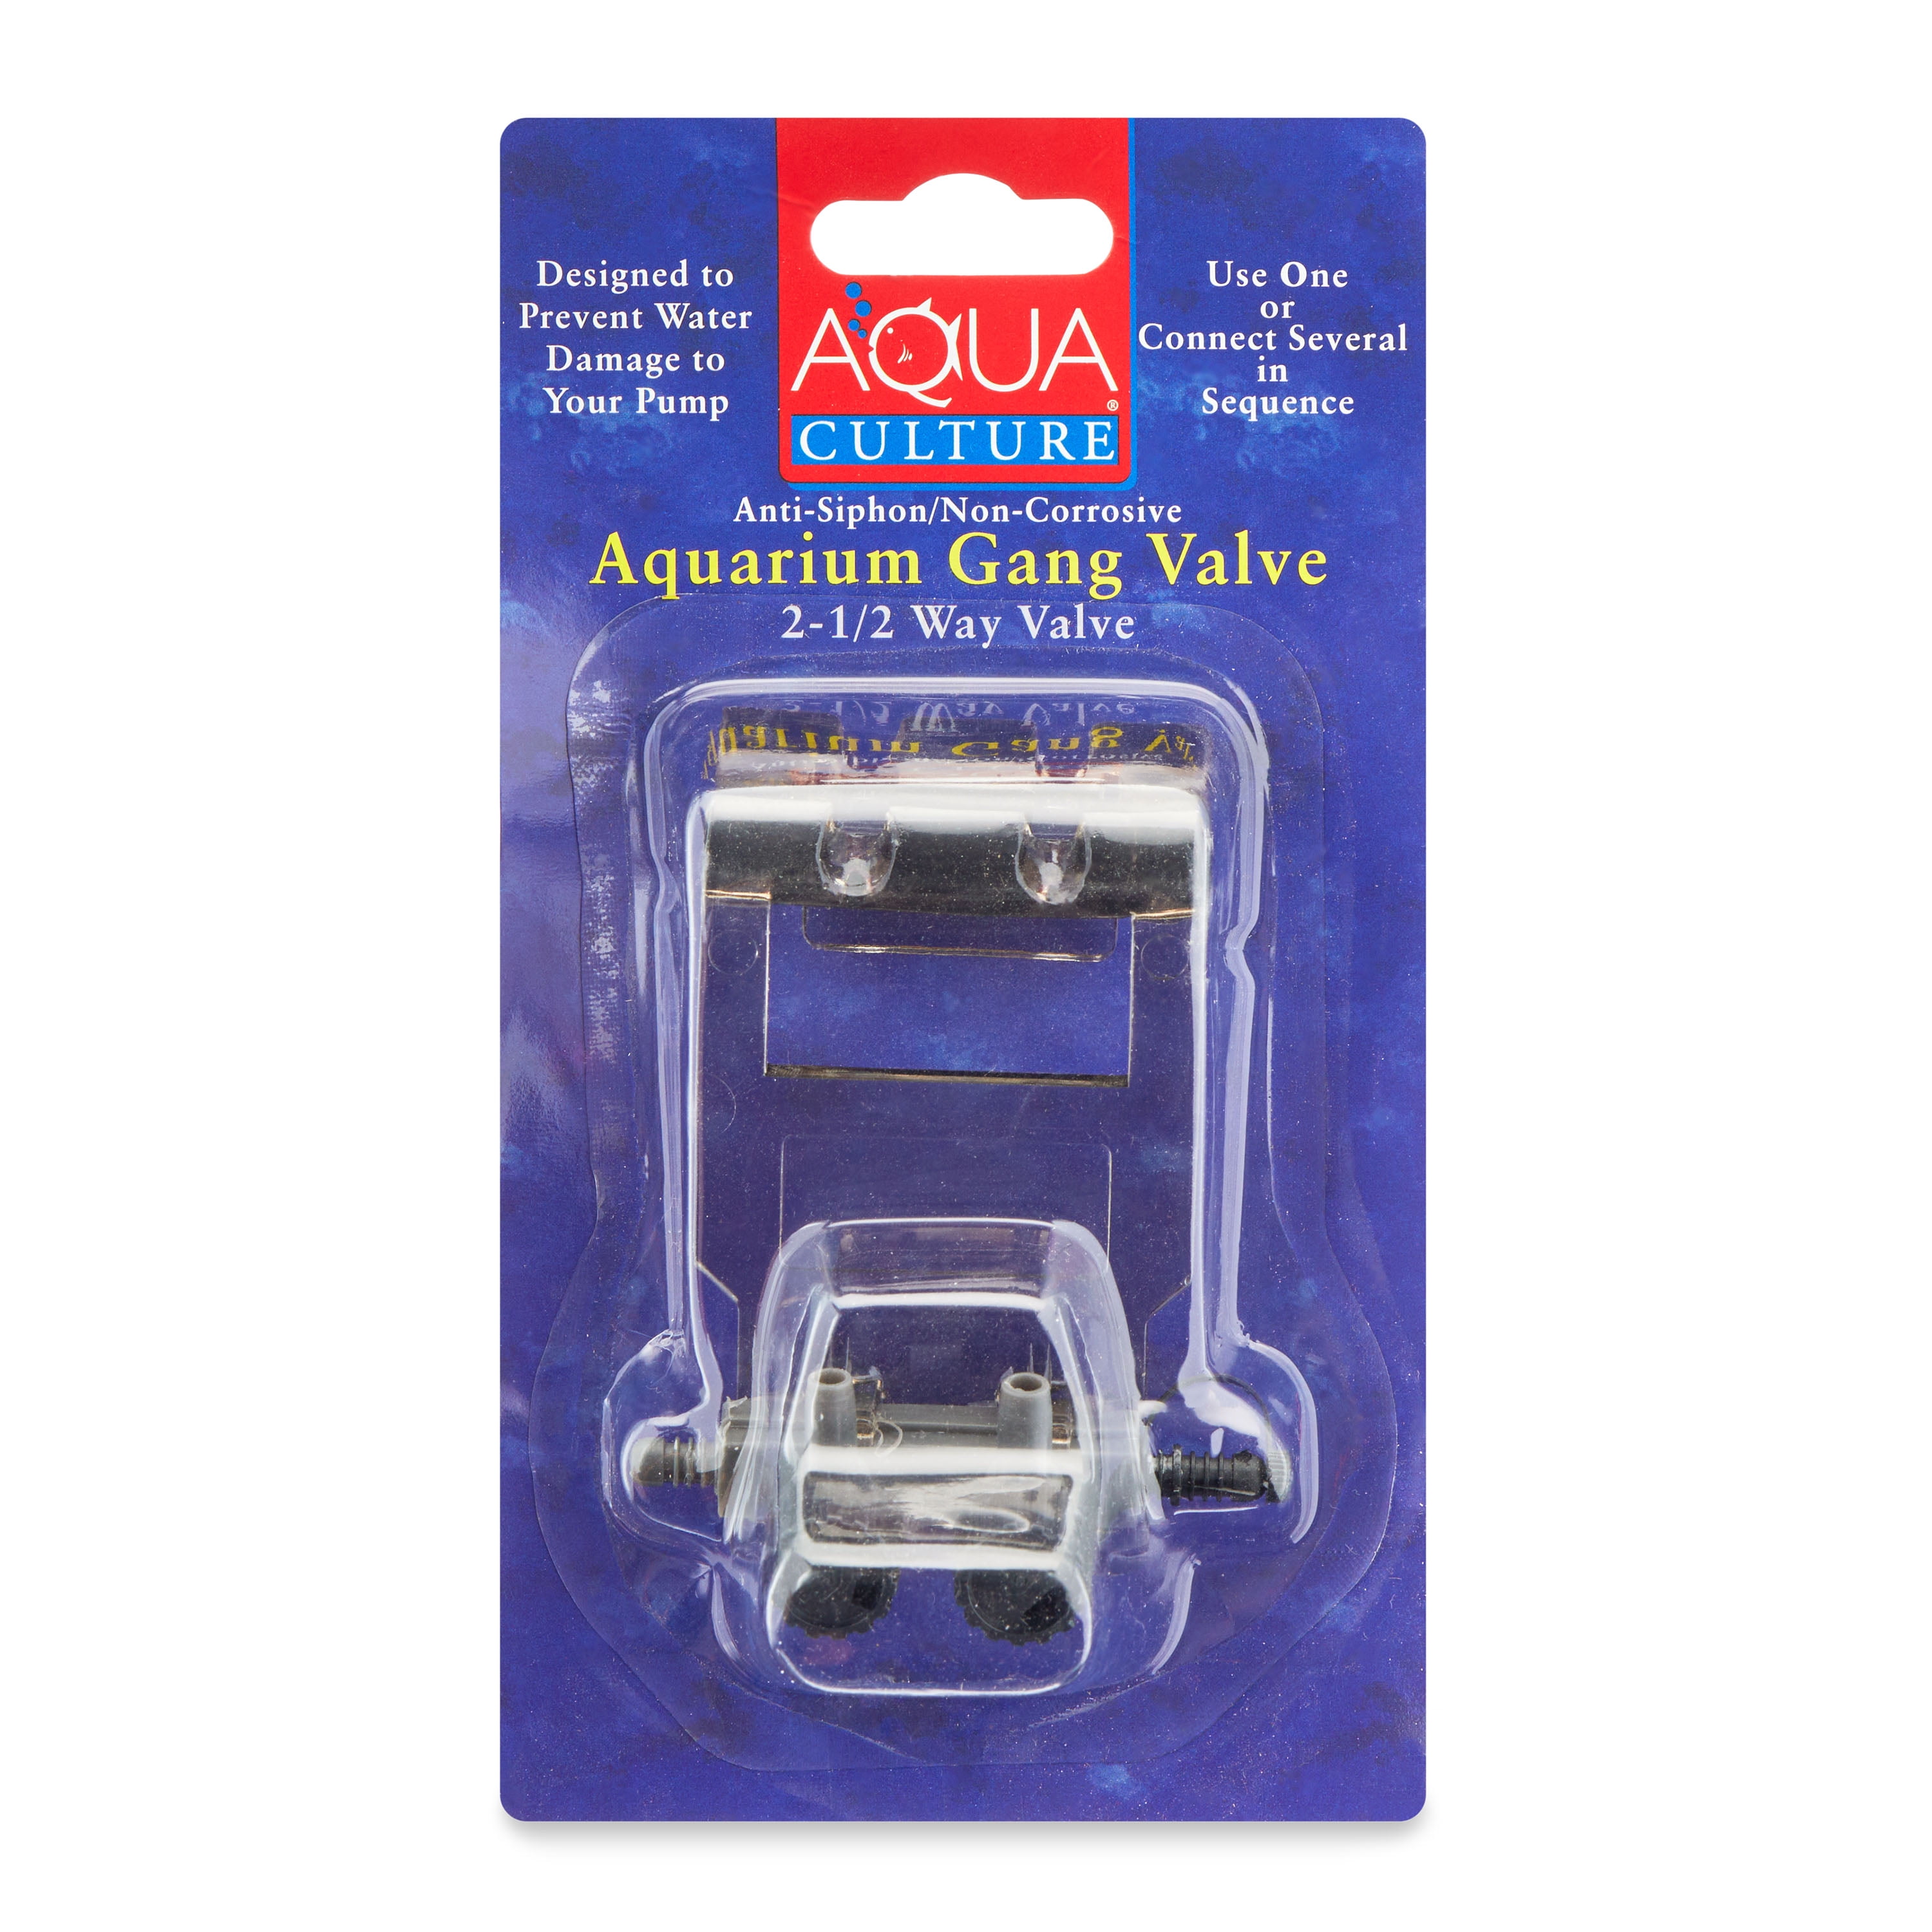 Aqua Culture 2-1/2 Way Aquarium Gang Valve